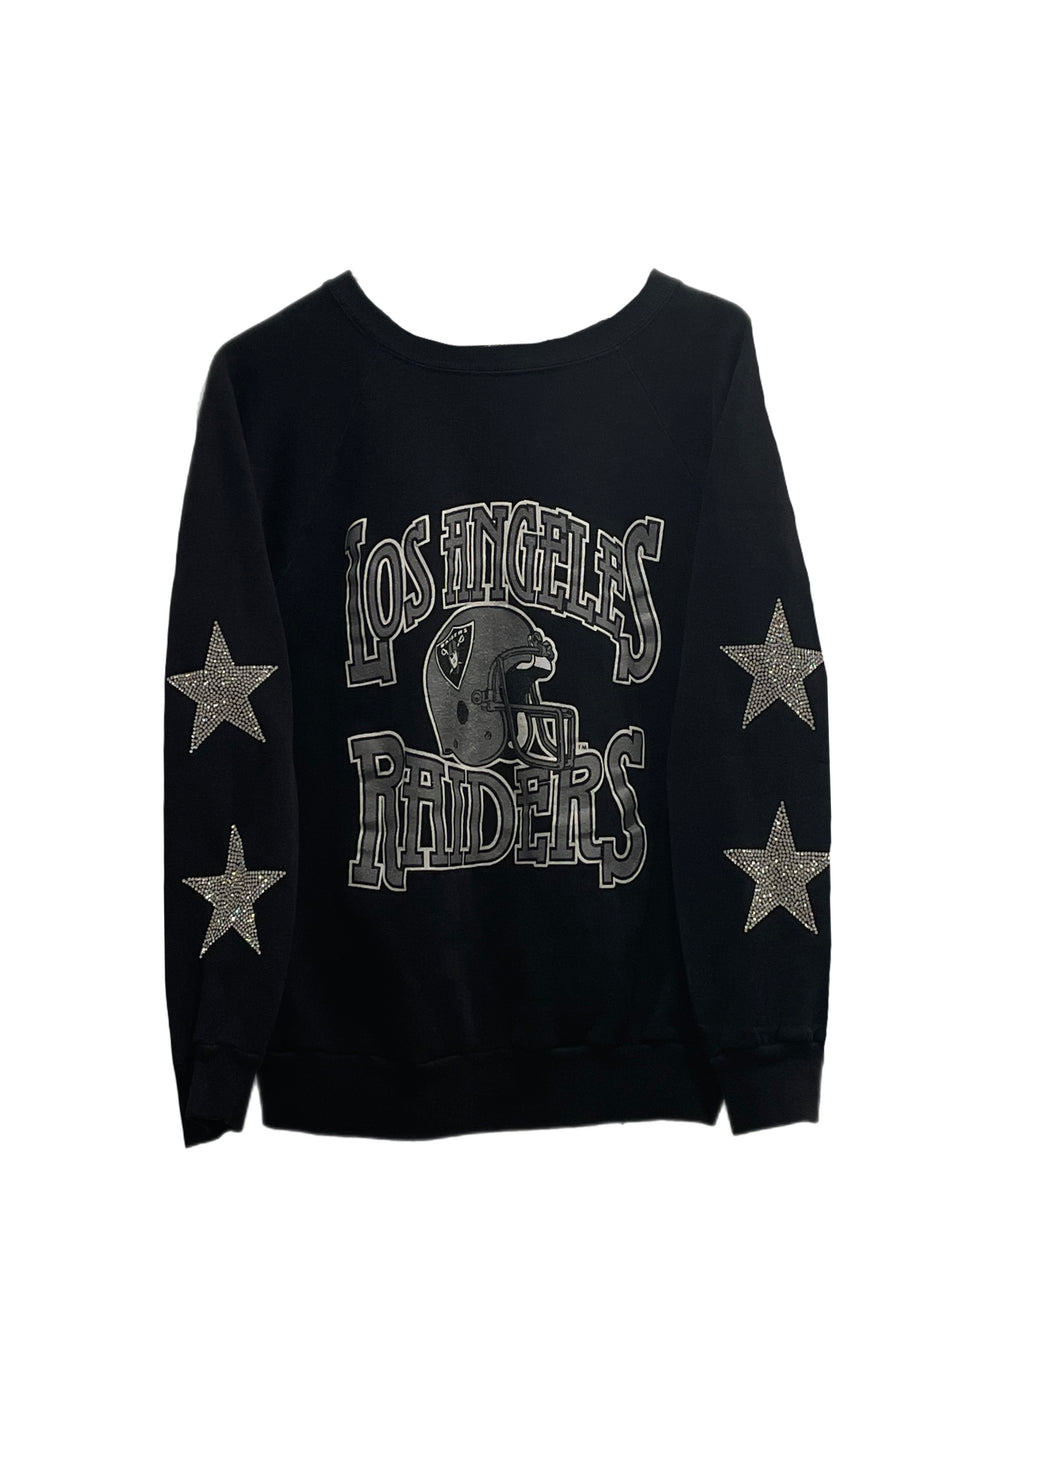 Las Vegas Raiders, Football One of a KIND Vintage Sweatshirt with Crystal Star Design